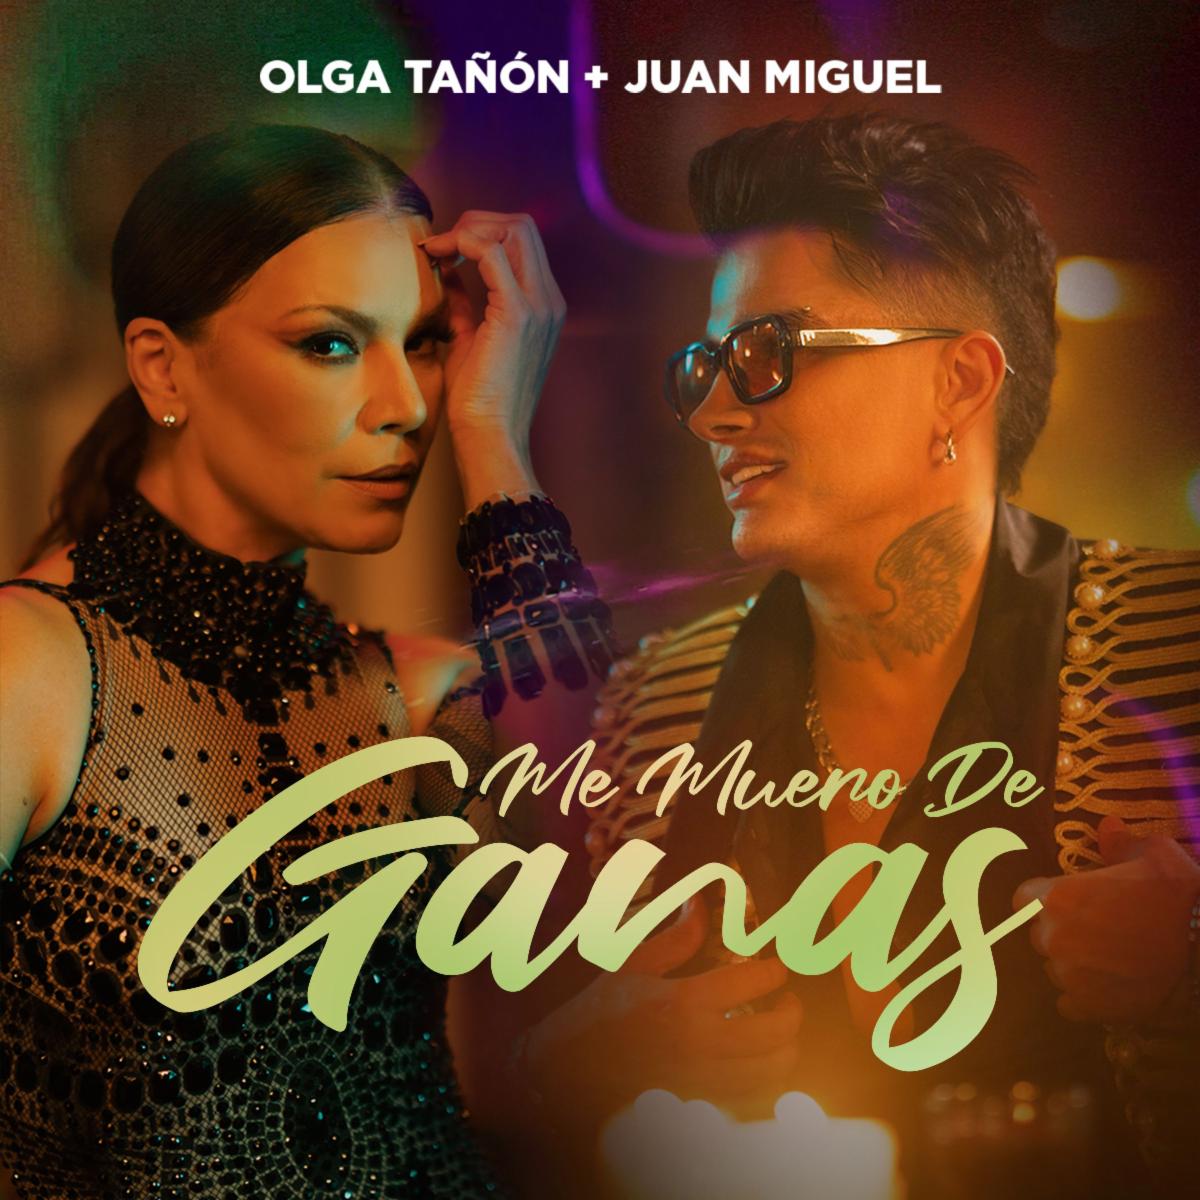 OLGA TAÑON se une a Juan Miguel en tema “Me Muero de Ganas” versión salsa